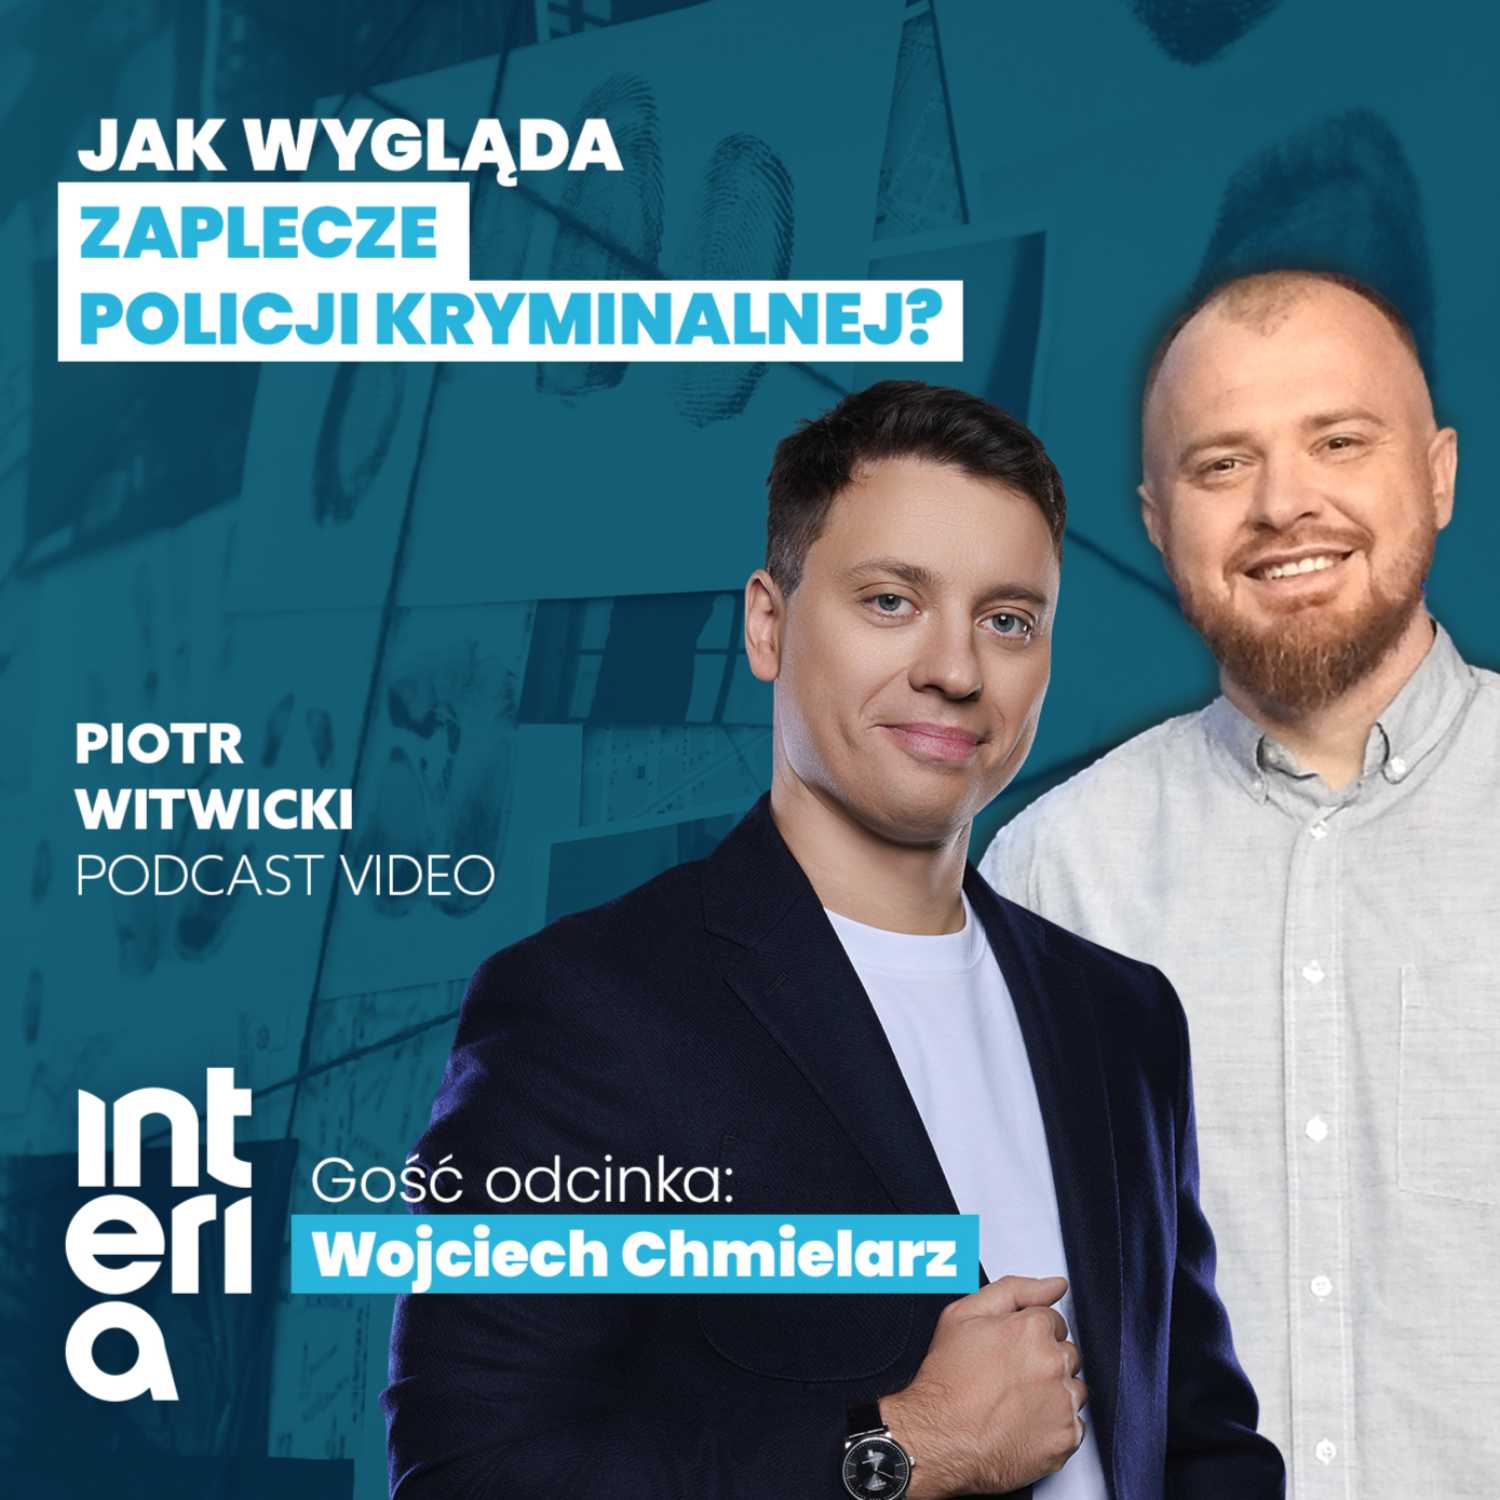 Wojciech Chmielarz: "Jak wygląda zaplecze Policji kryminalnej?"